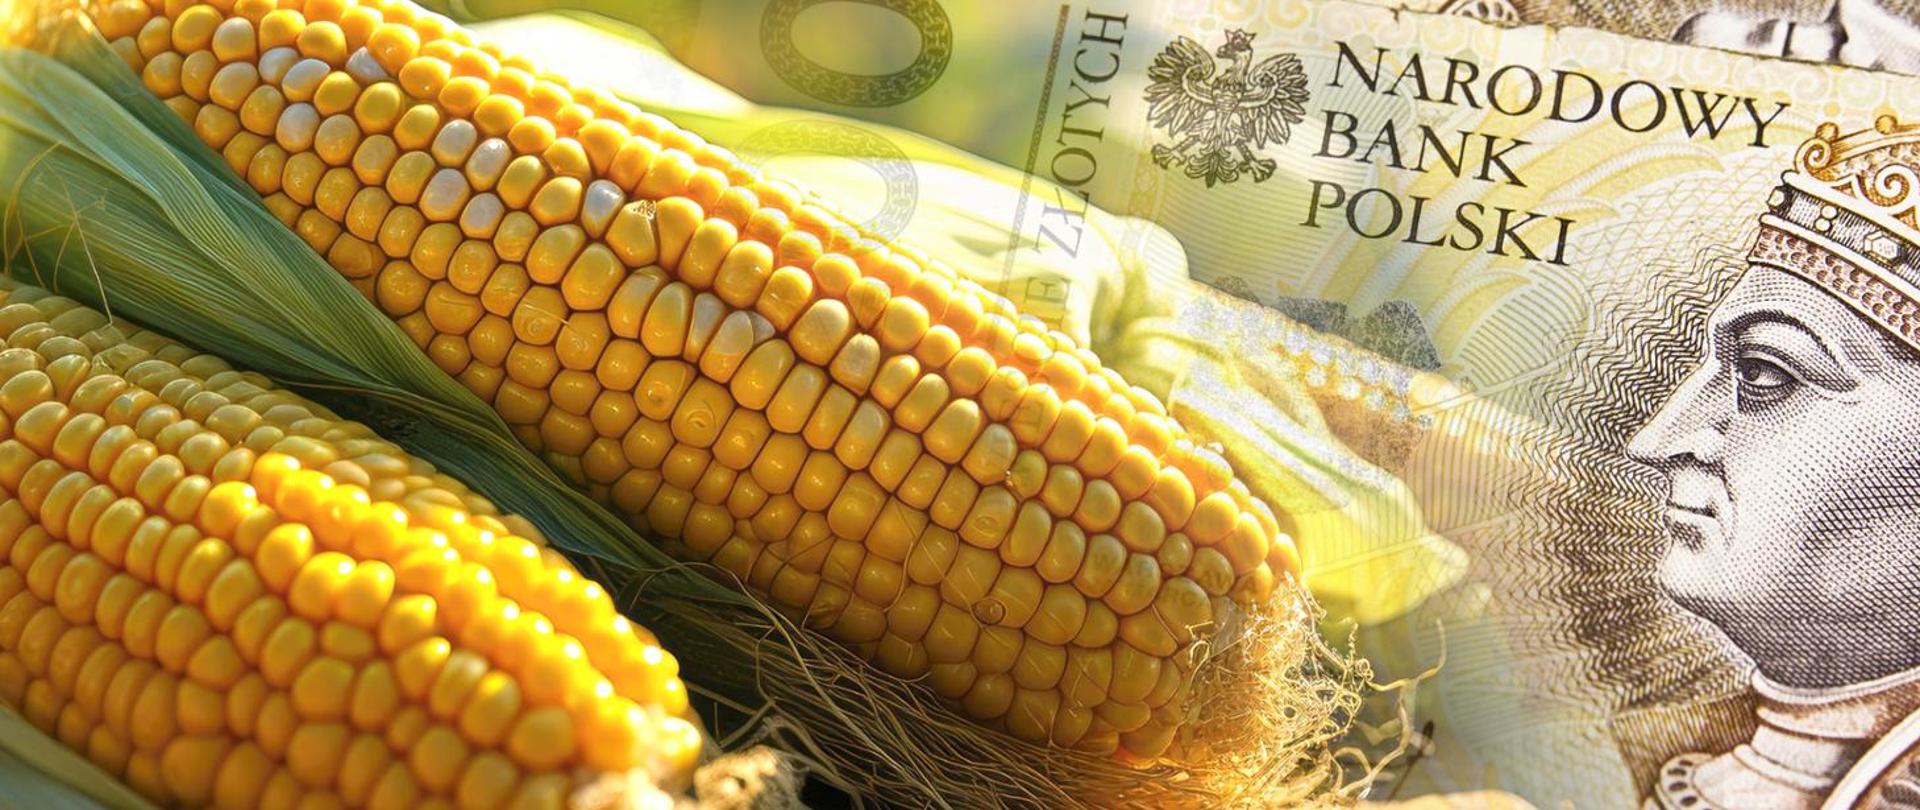 grafika przedstawia banknoty i kukurydzę